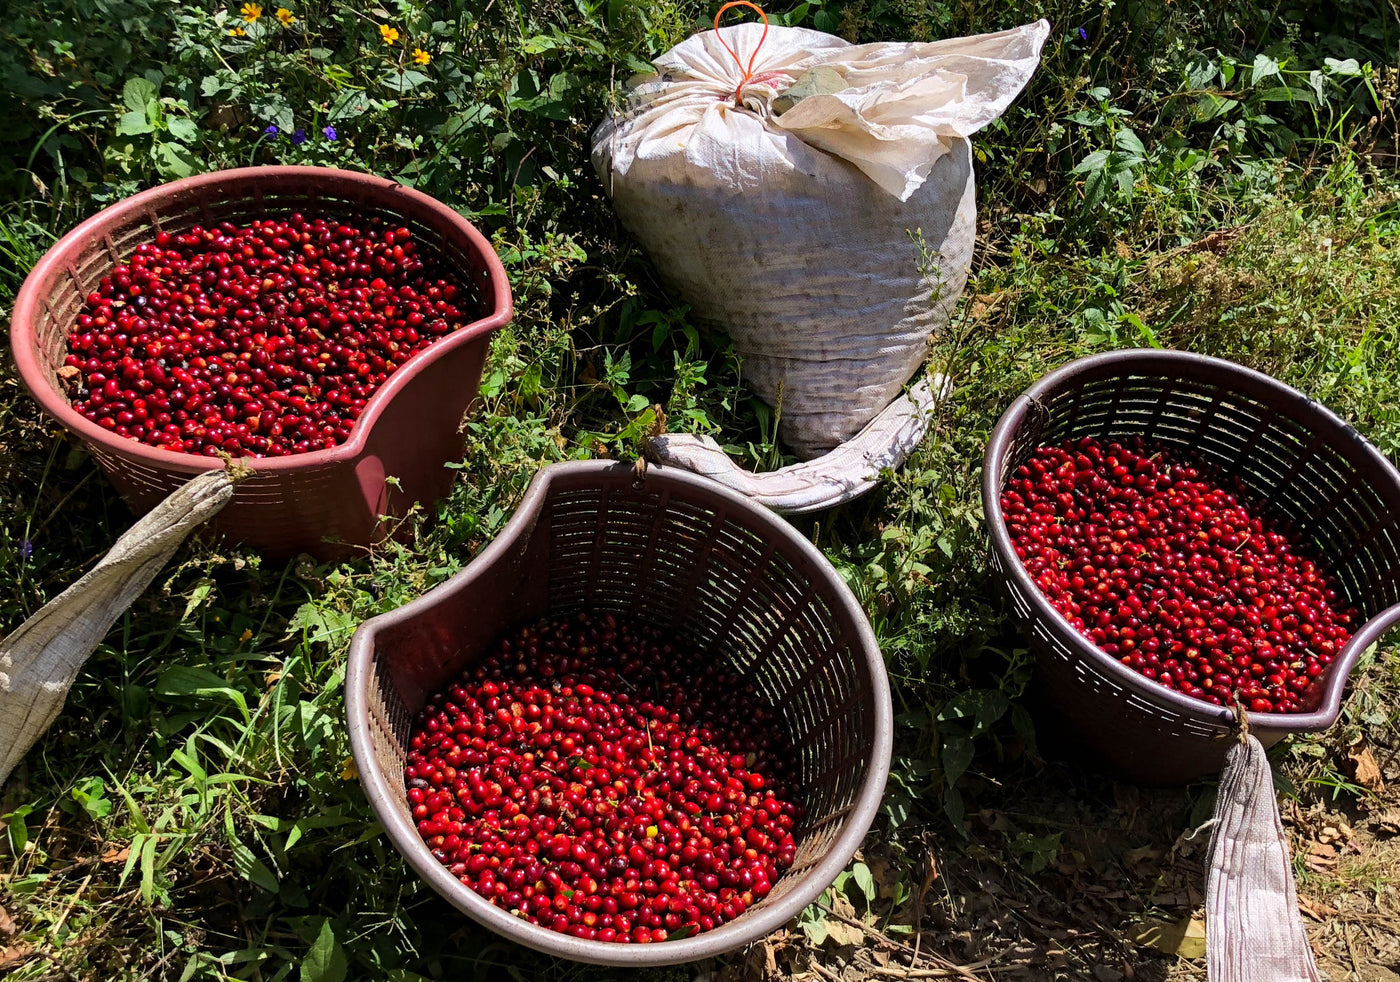 Panamanian coffee cherries freshly picked